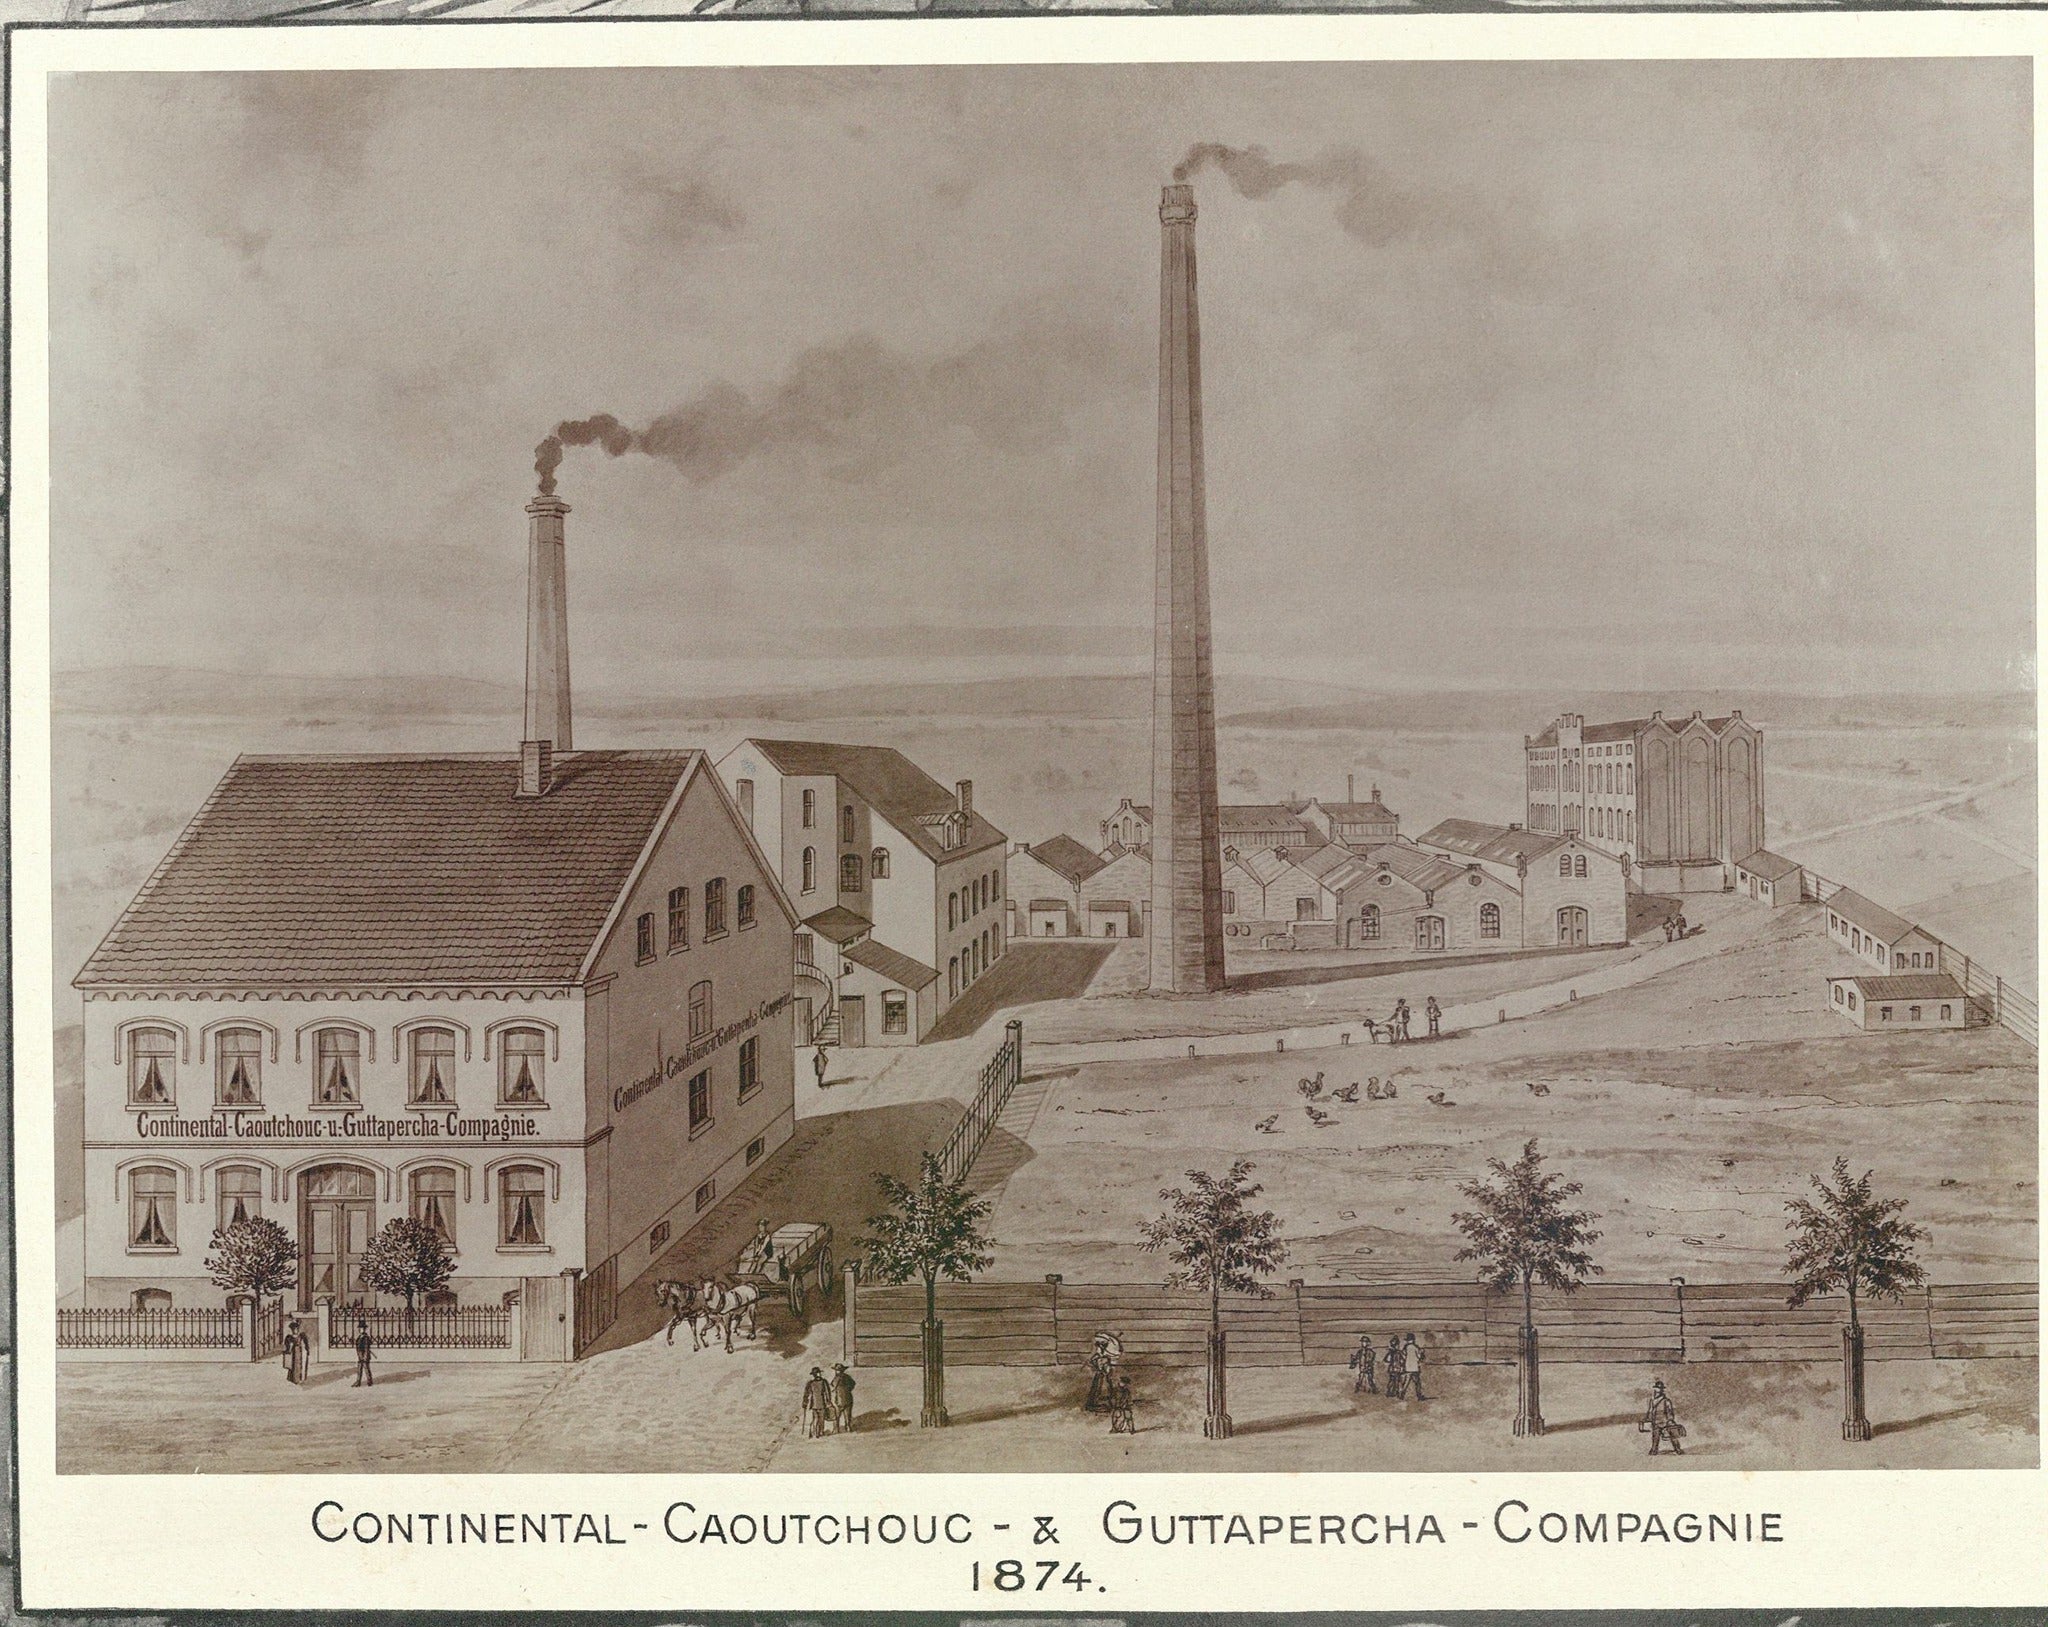 Desenho com imagem aérea da fábrica Continental Caoutchouc & Gutta-Percha Company foi fundada em Hanover em 8 de outubro de 1871